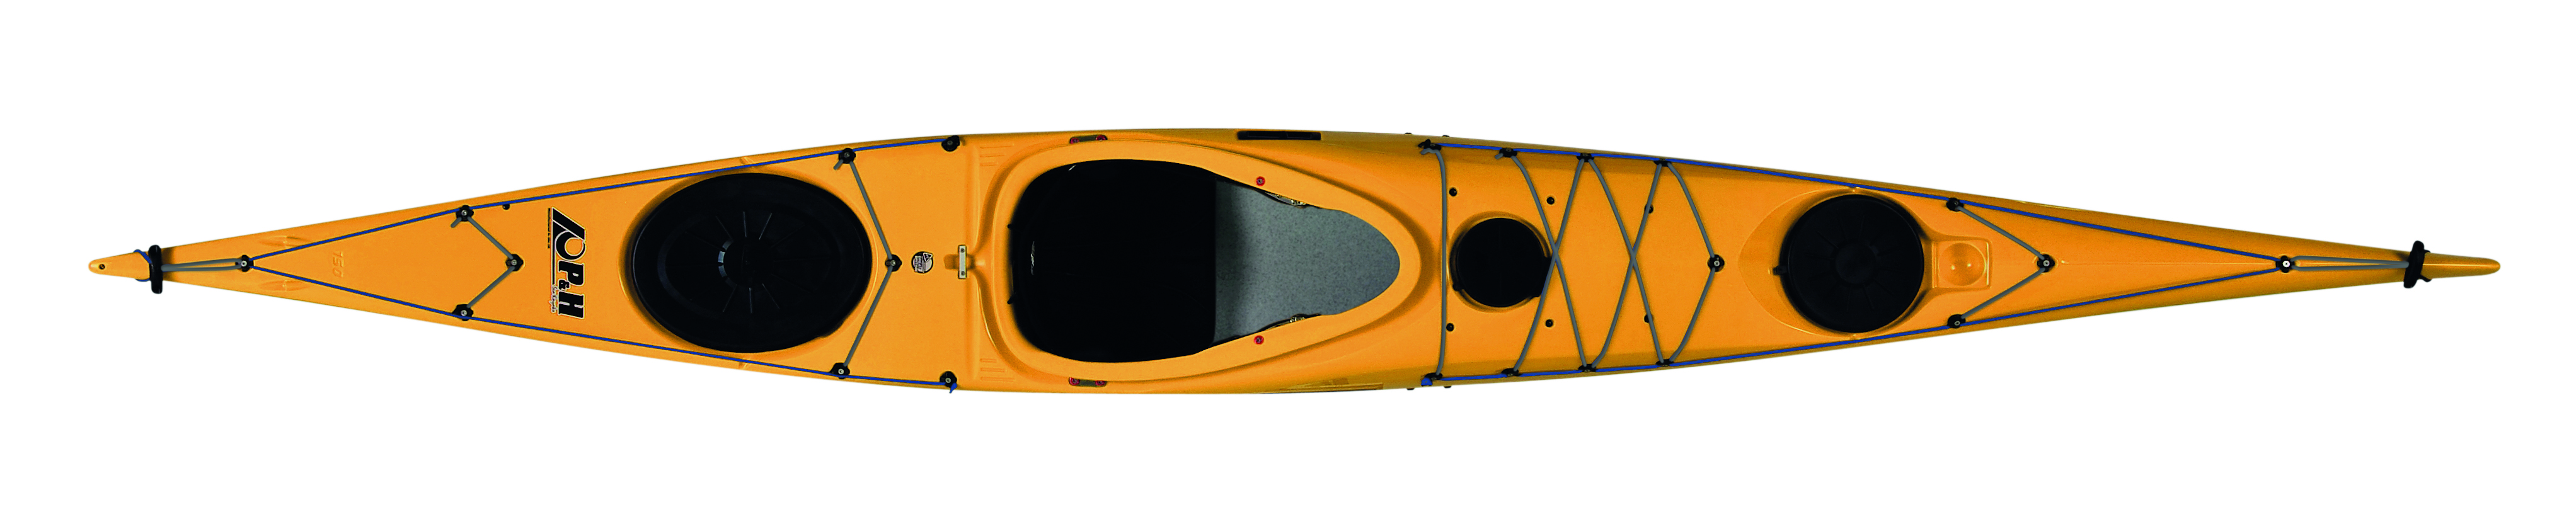 Kayaks: Delphin 150/155 Corelite X by P&H - Image 4389